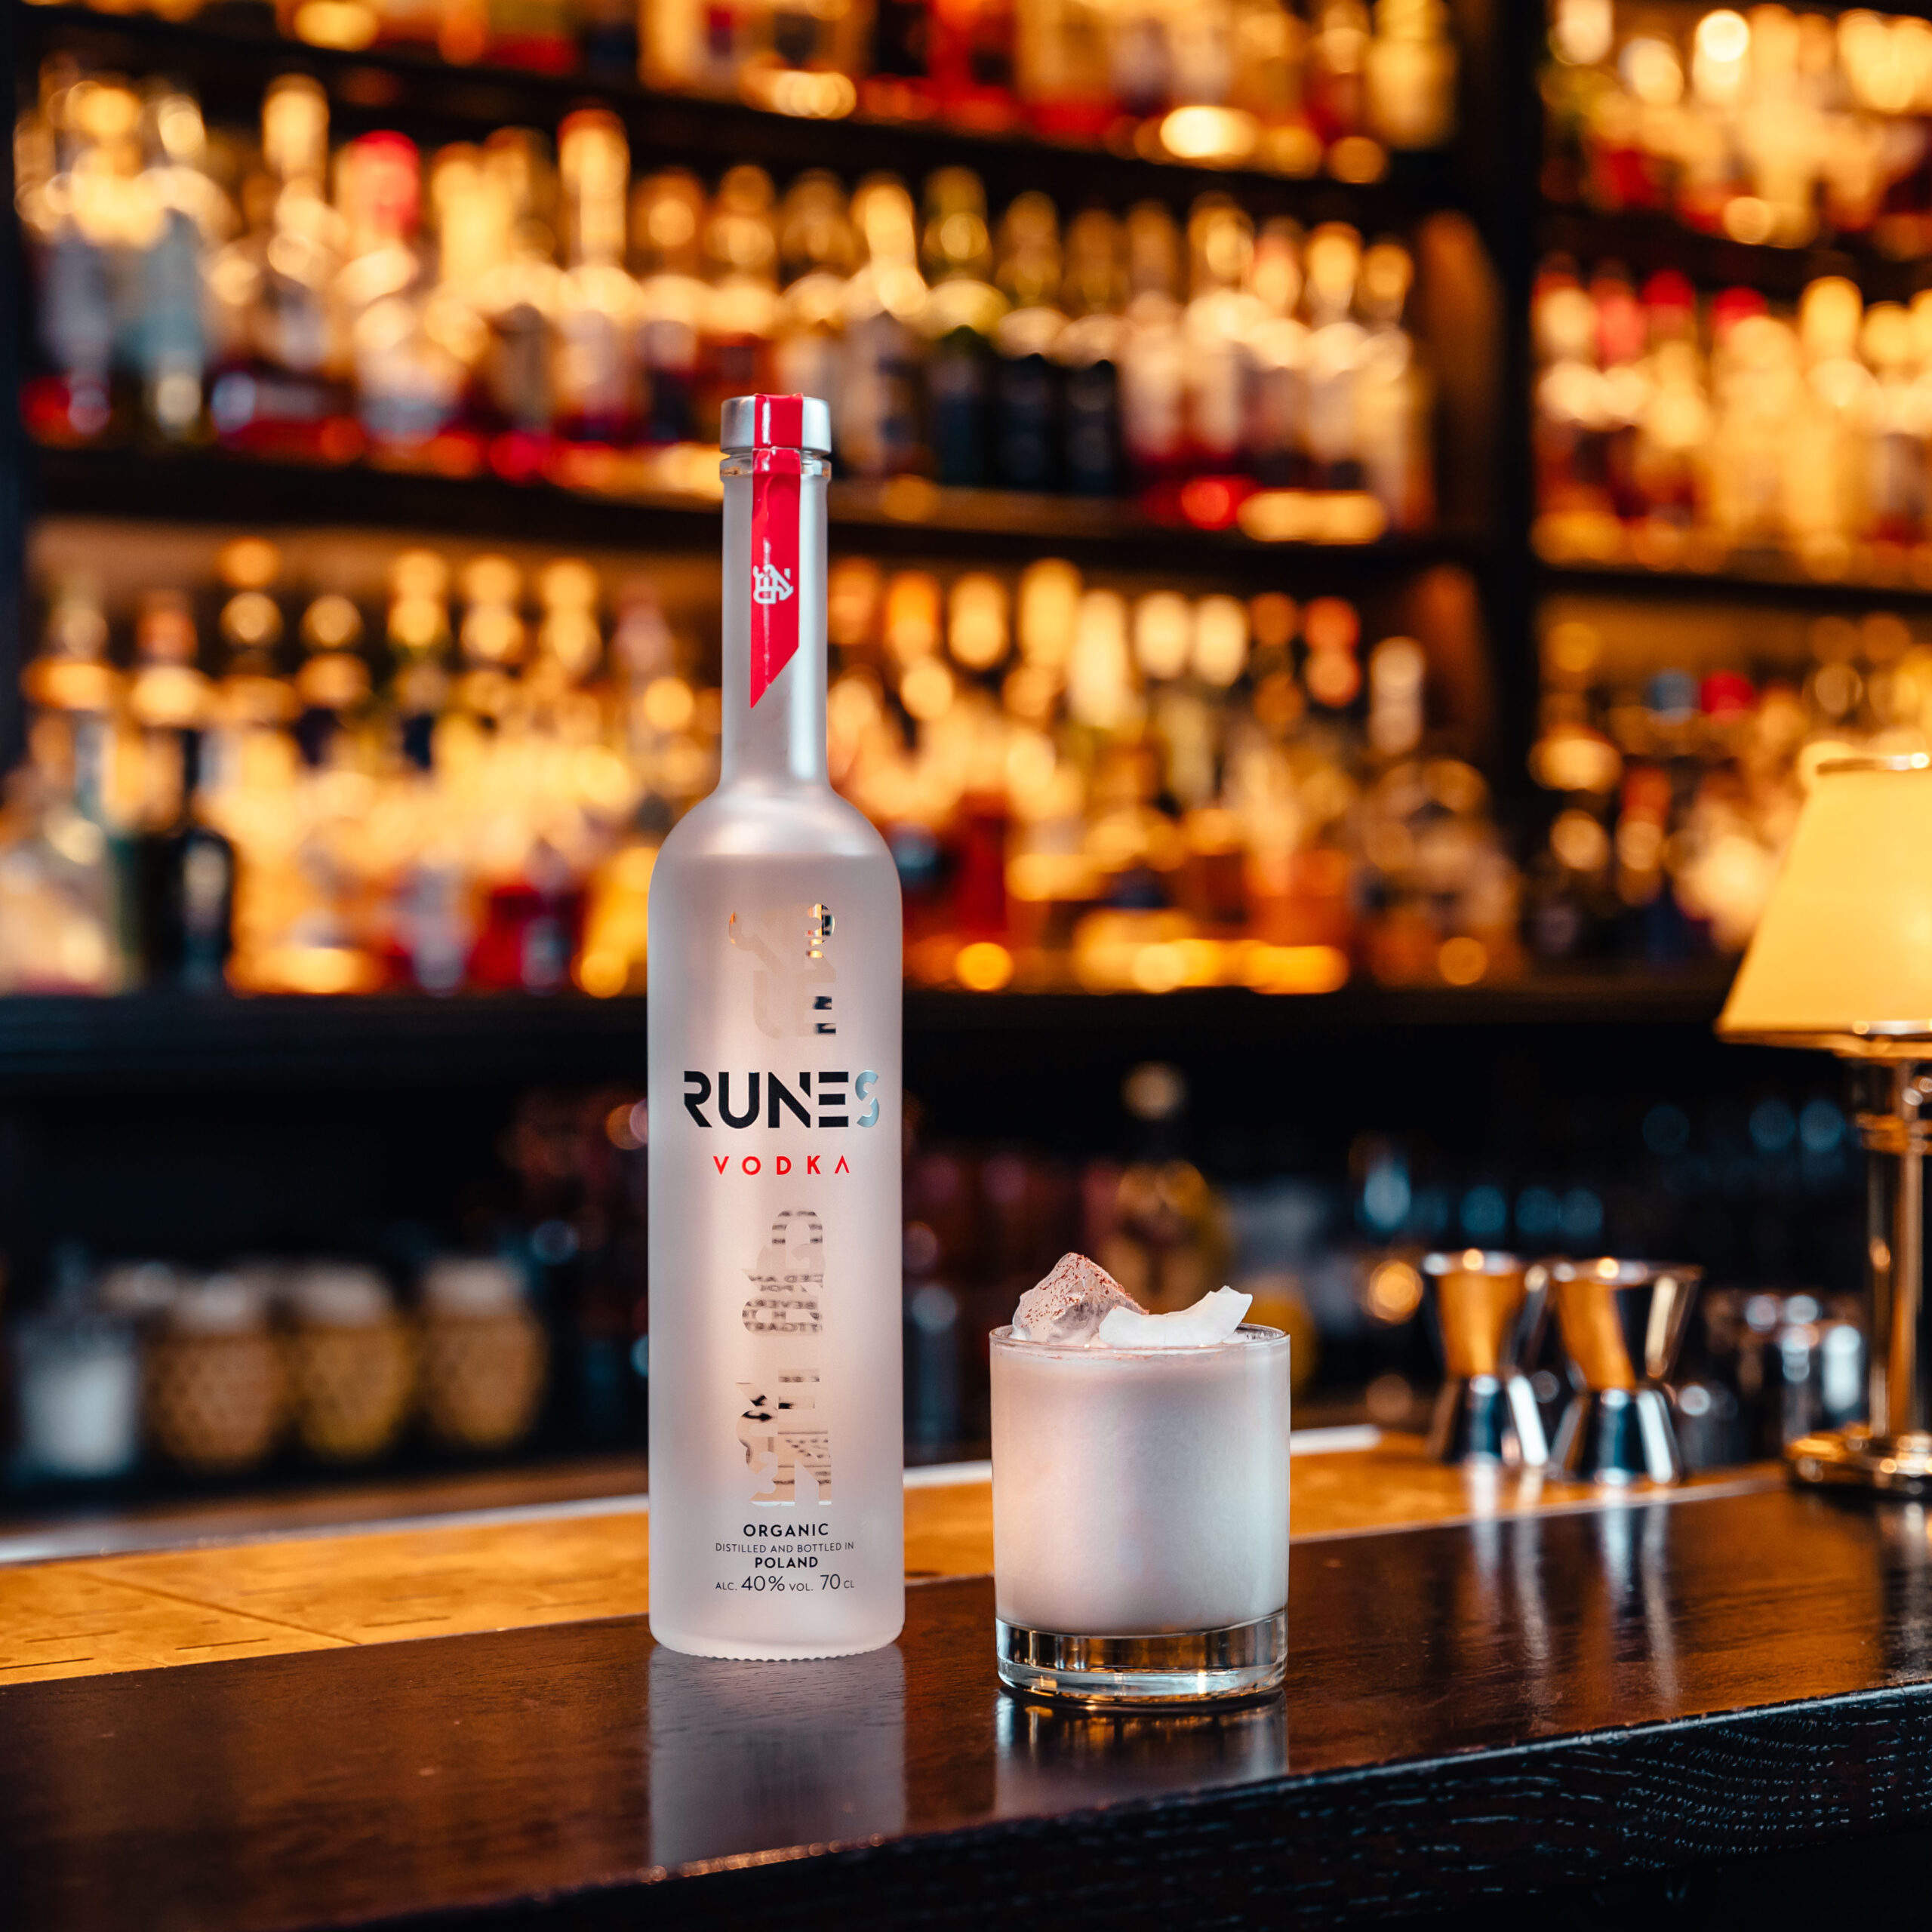 Eine süße, vollmundige Komposition mit RUNES Vodka in Form eines Cocktails. Nur qualitativ hochwertige Zutaten machen den veganen RUNES Signature Drink Coco Blanc zu einem einmaligen Geschmackserlebnis.